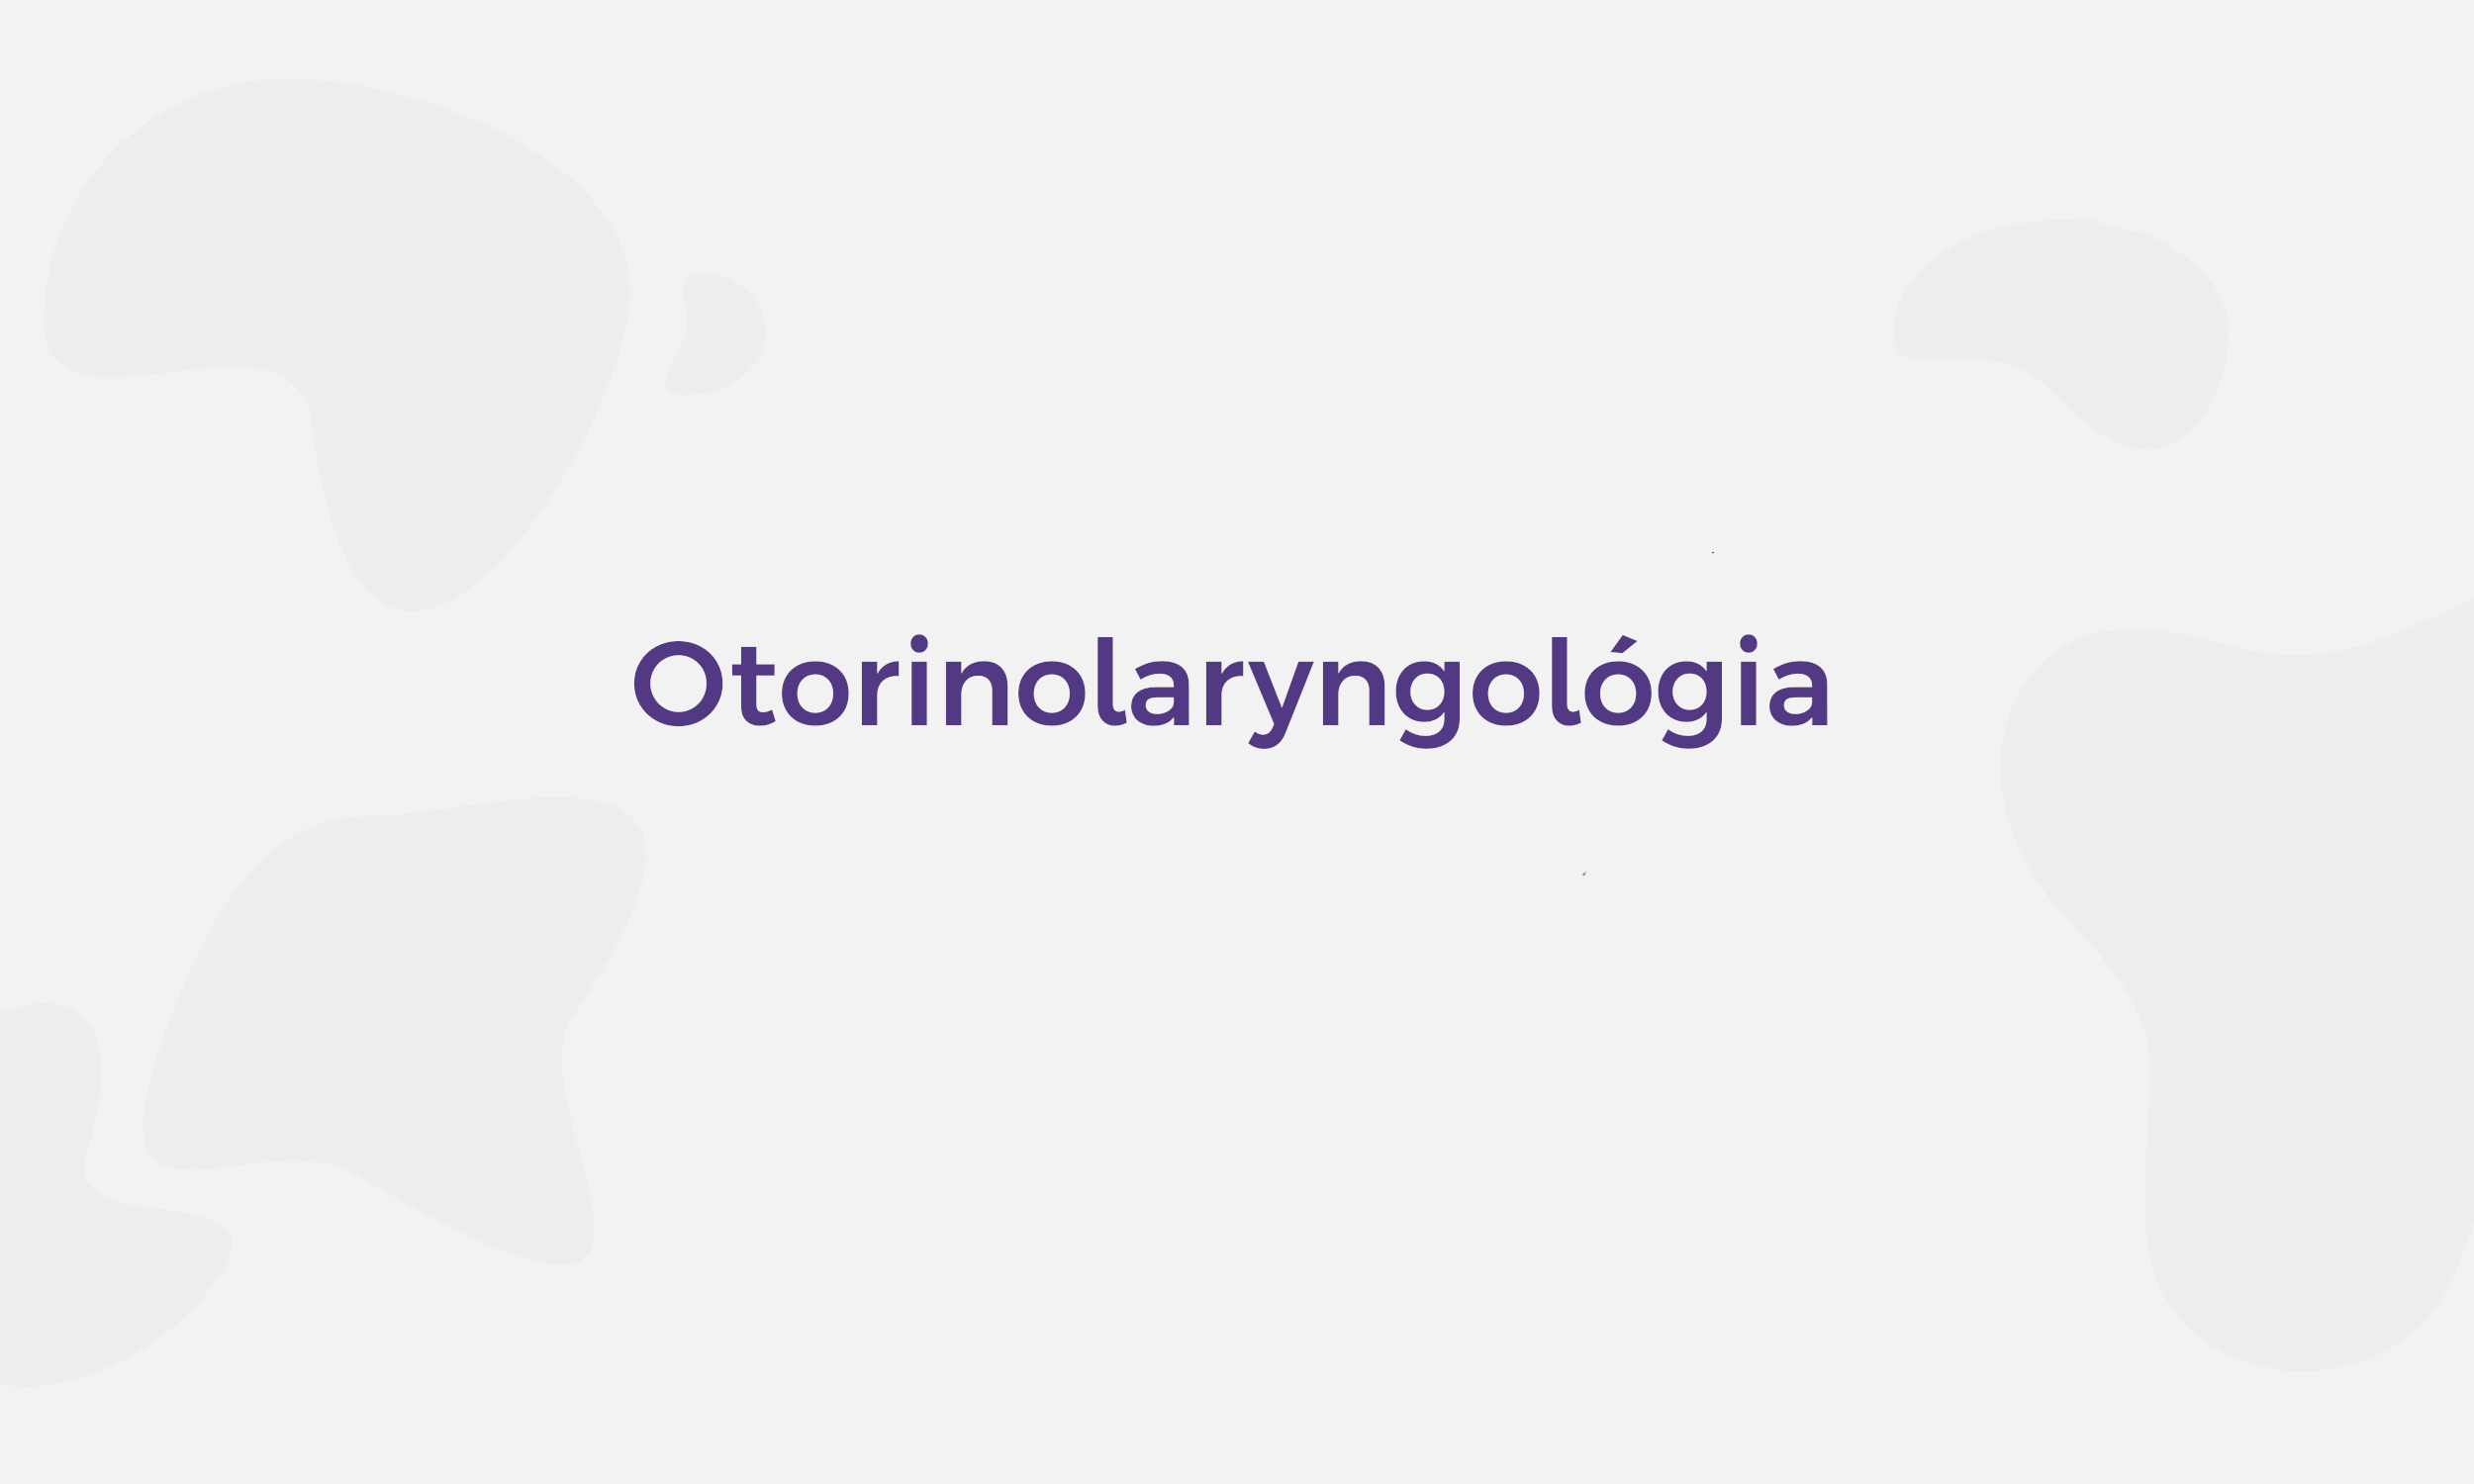 Otorinolaryngológia